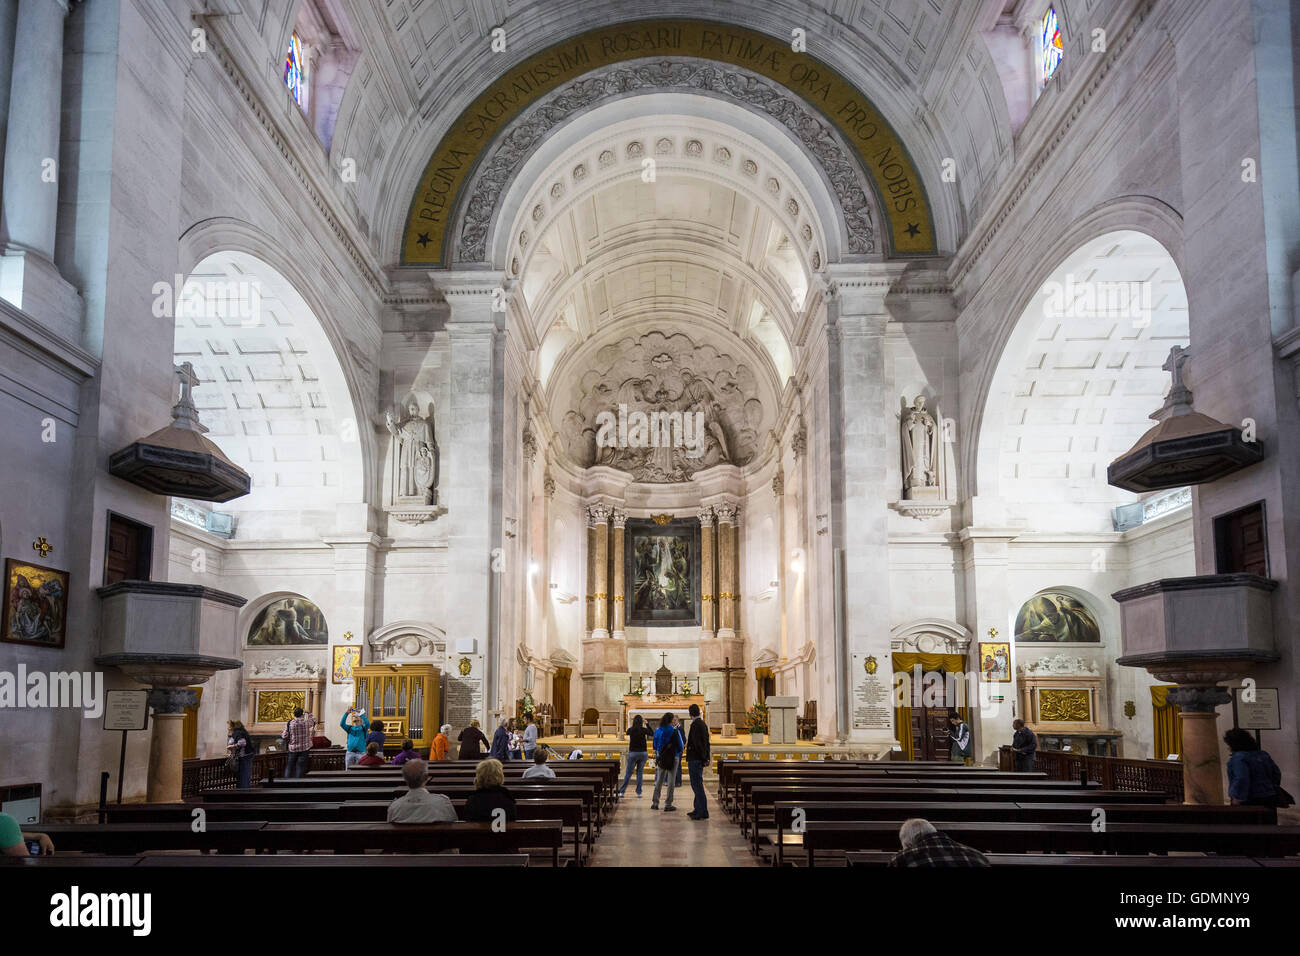 Interno della Basilica Antiga em Fatima, Fatima, Santarem, Portogallo, Europa, viaggi, fotografia di viaggio Foto Stock